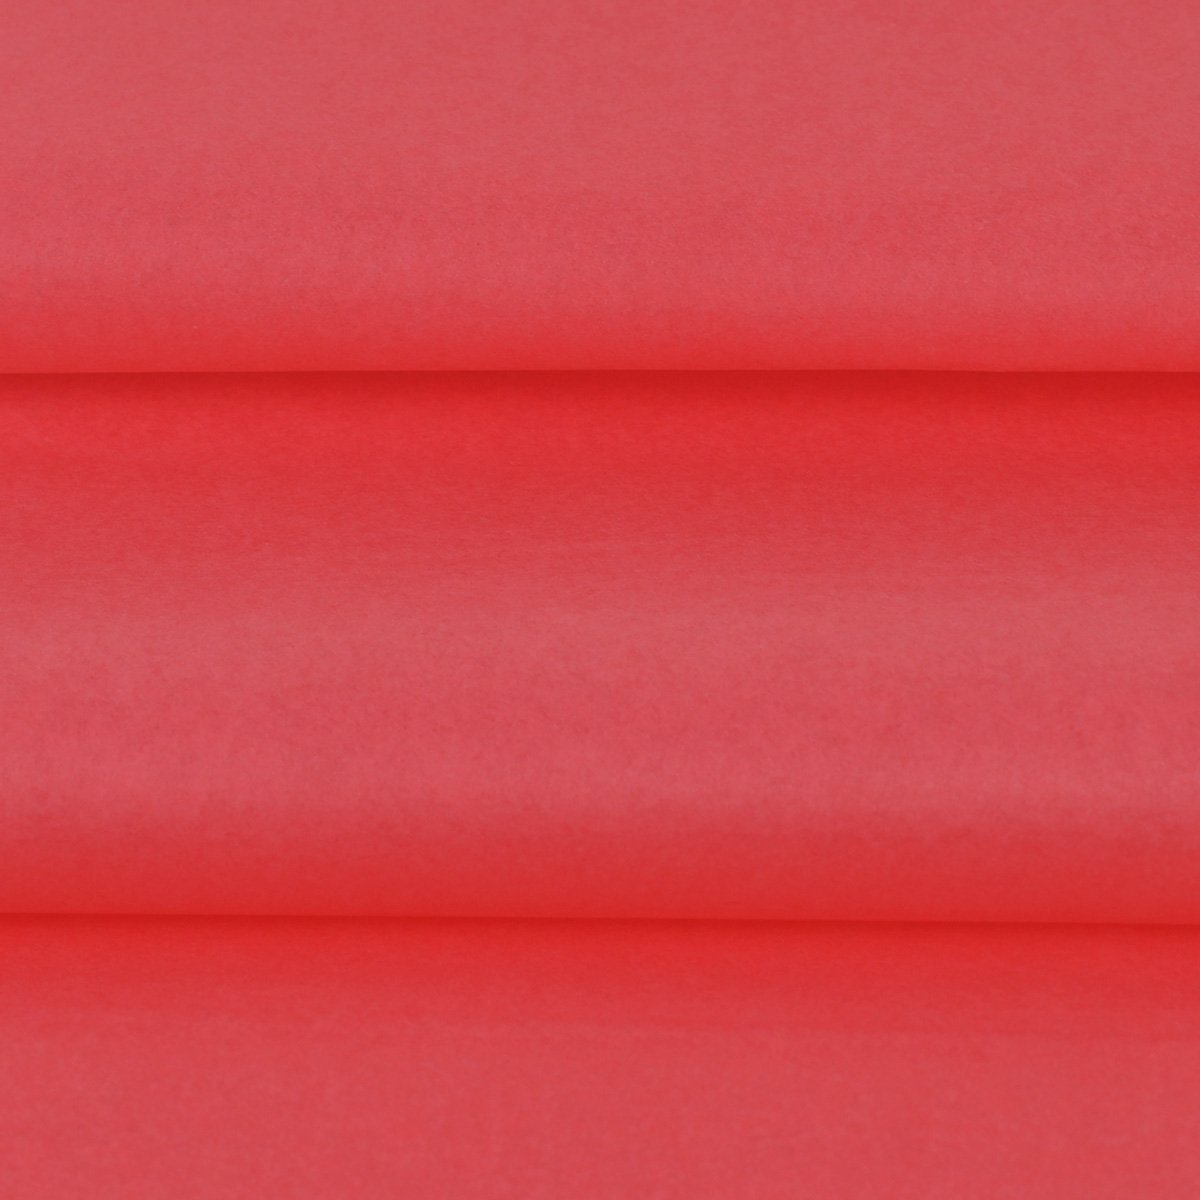 Vloeipapier kleur Rood